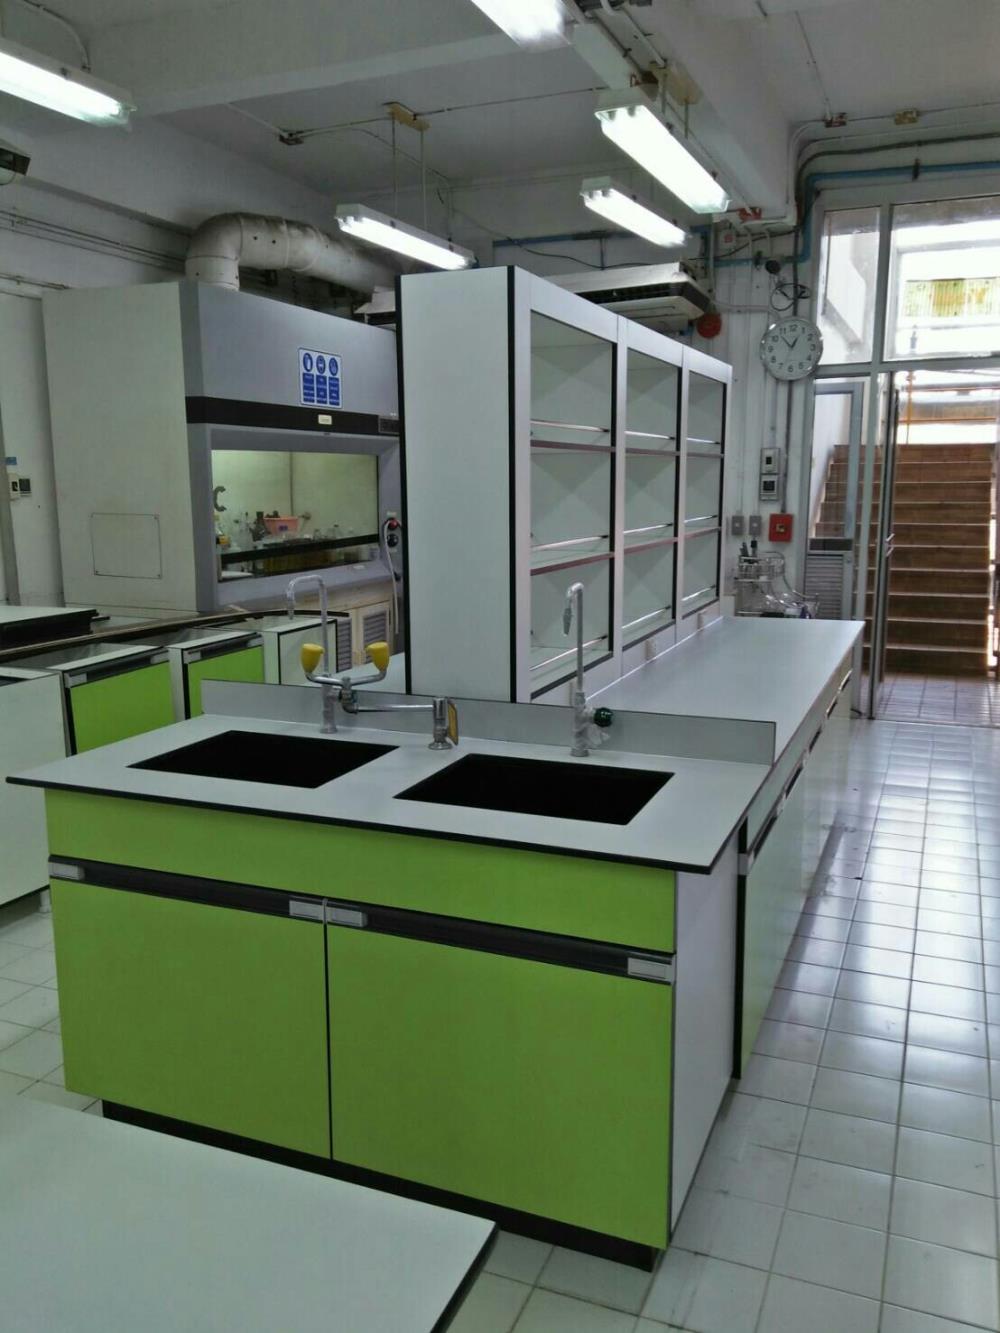 Laboratory Furniture - โต๊ะปฏิบัติการกลาง,โต๊ะปฏิบัติการ, โต๊ะแลป, โต๊ะกลาง, โต๊ะทดลอง, โต๊ะกลางสำหรับห้องทดลอง, ออกแบบเฟอร์นิเจอร์, เฟอร์นิเจอร์ราคาถูก,AIMPRODUCT,Instruments and Controls/Laboratory Equipment